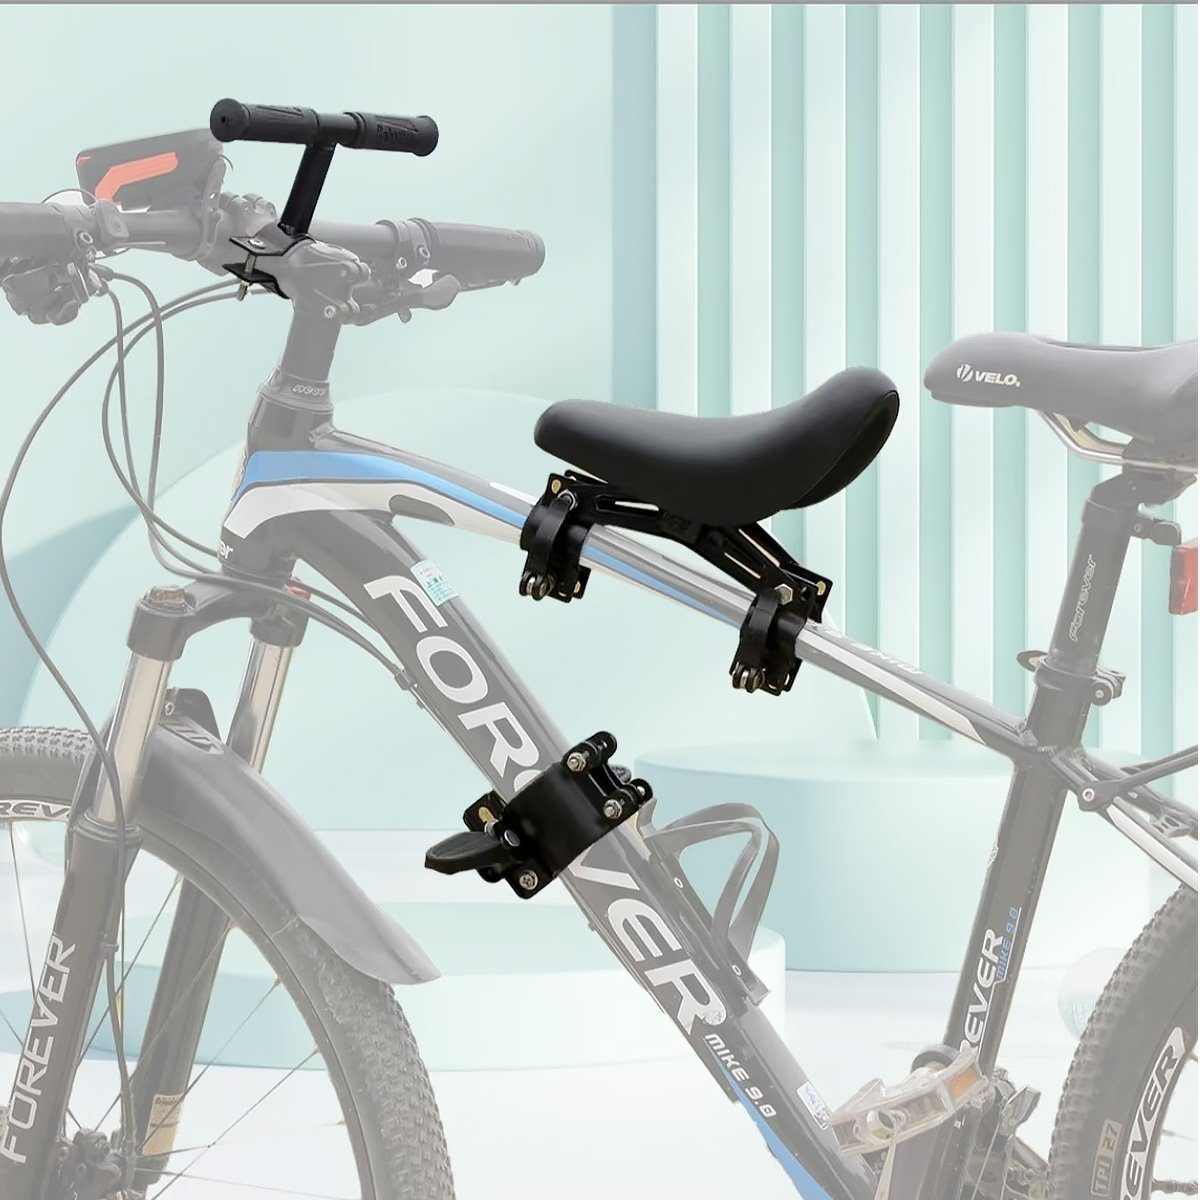 MidGard Fahrradkindersitz für Befestigen vorne am Rahmen, Kinder-Fahrradsitz mit Lenkergriffe